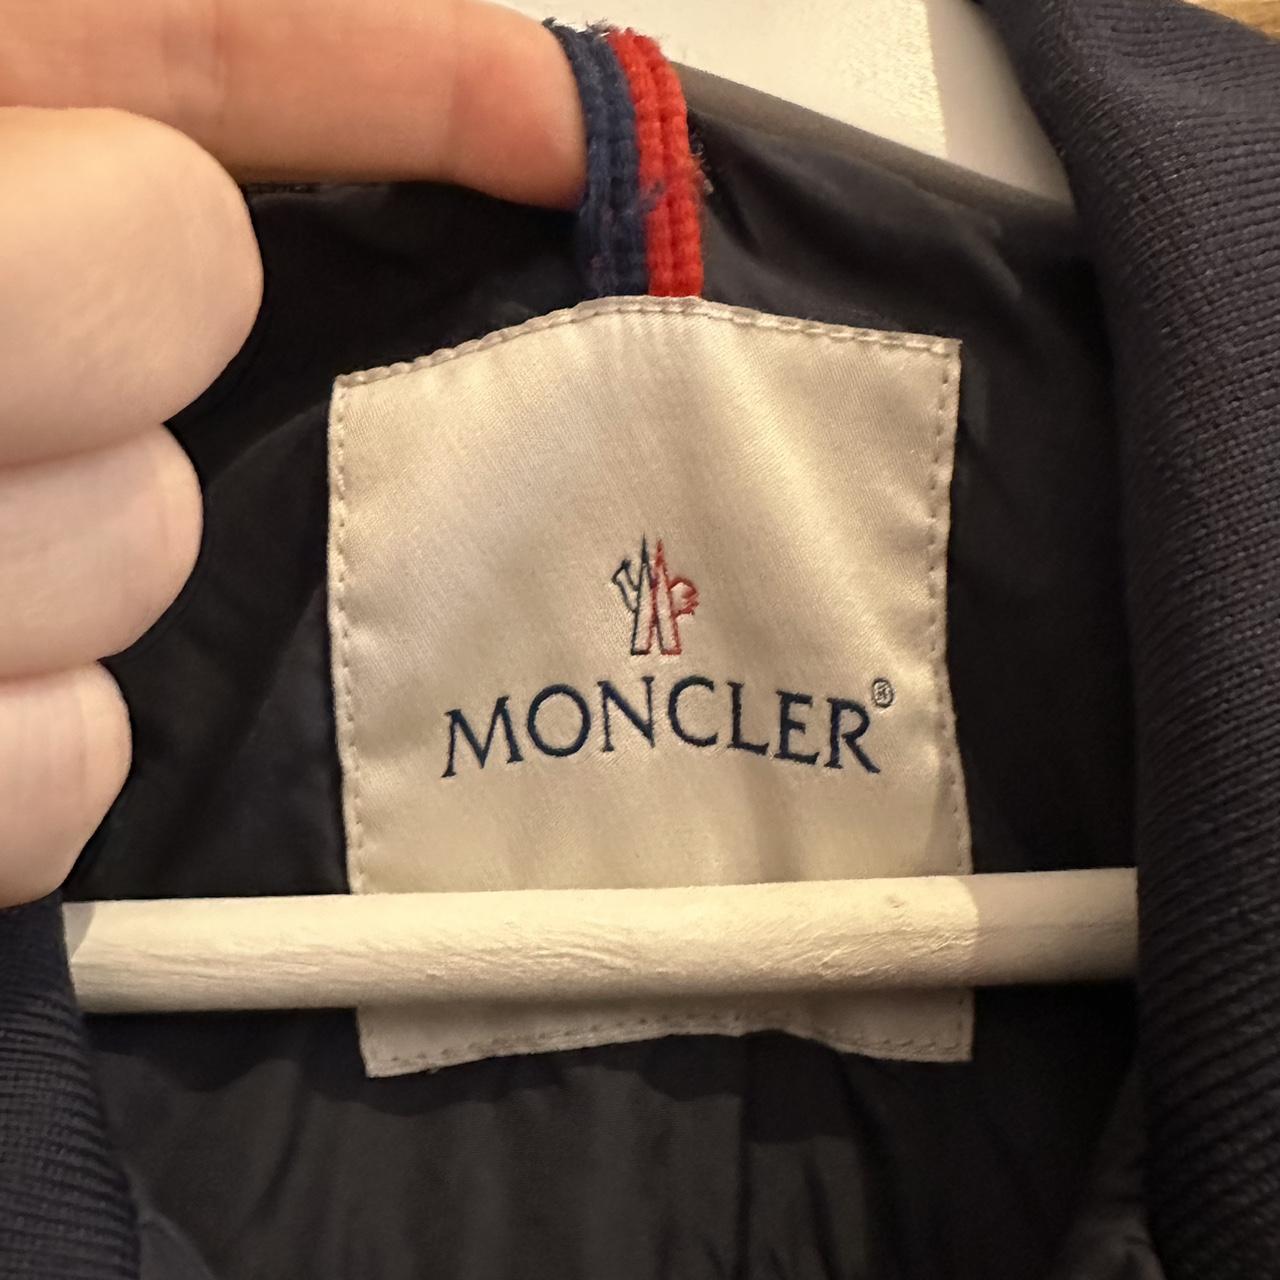 Moncler bomber jacket with pockets. Size 2 (M)... - Depop